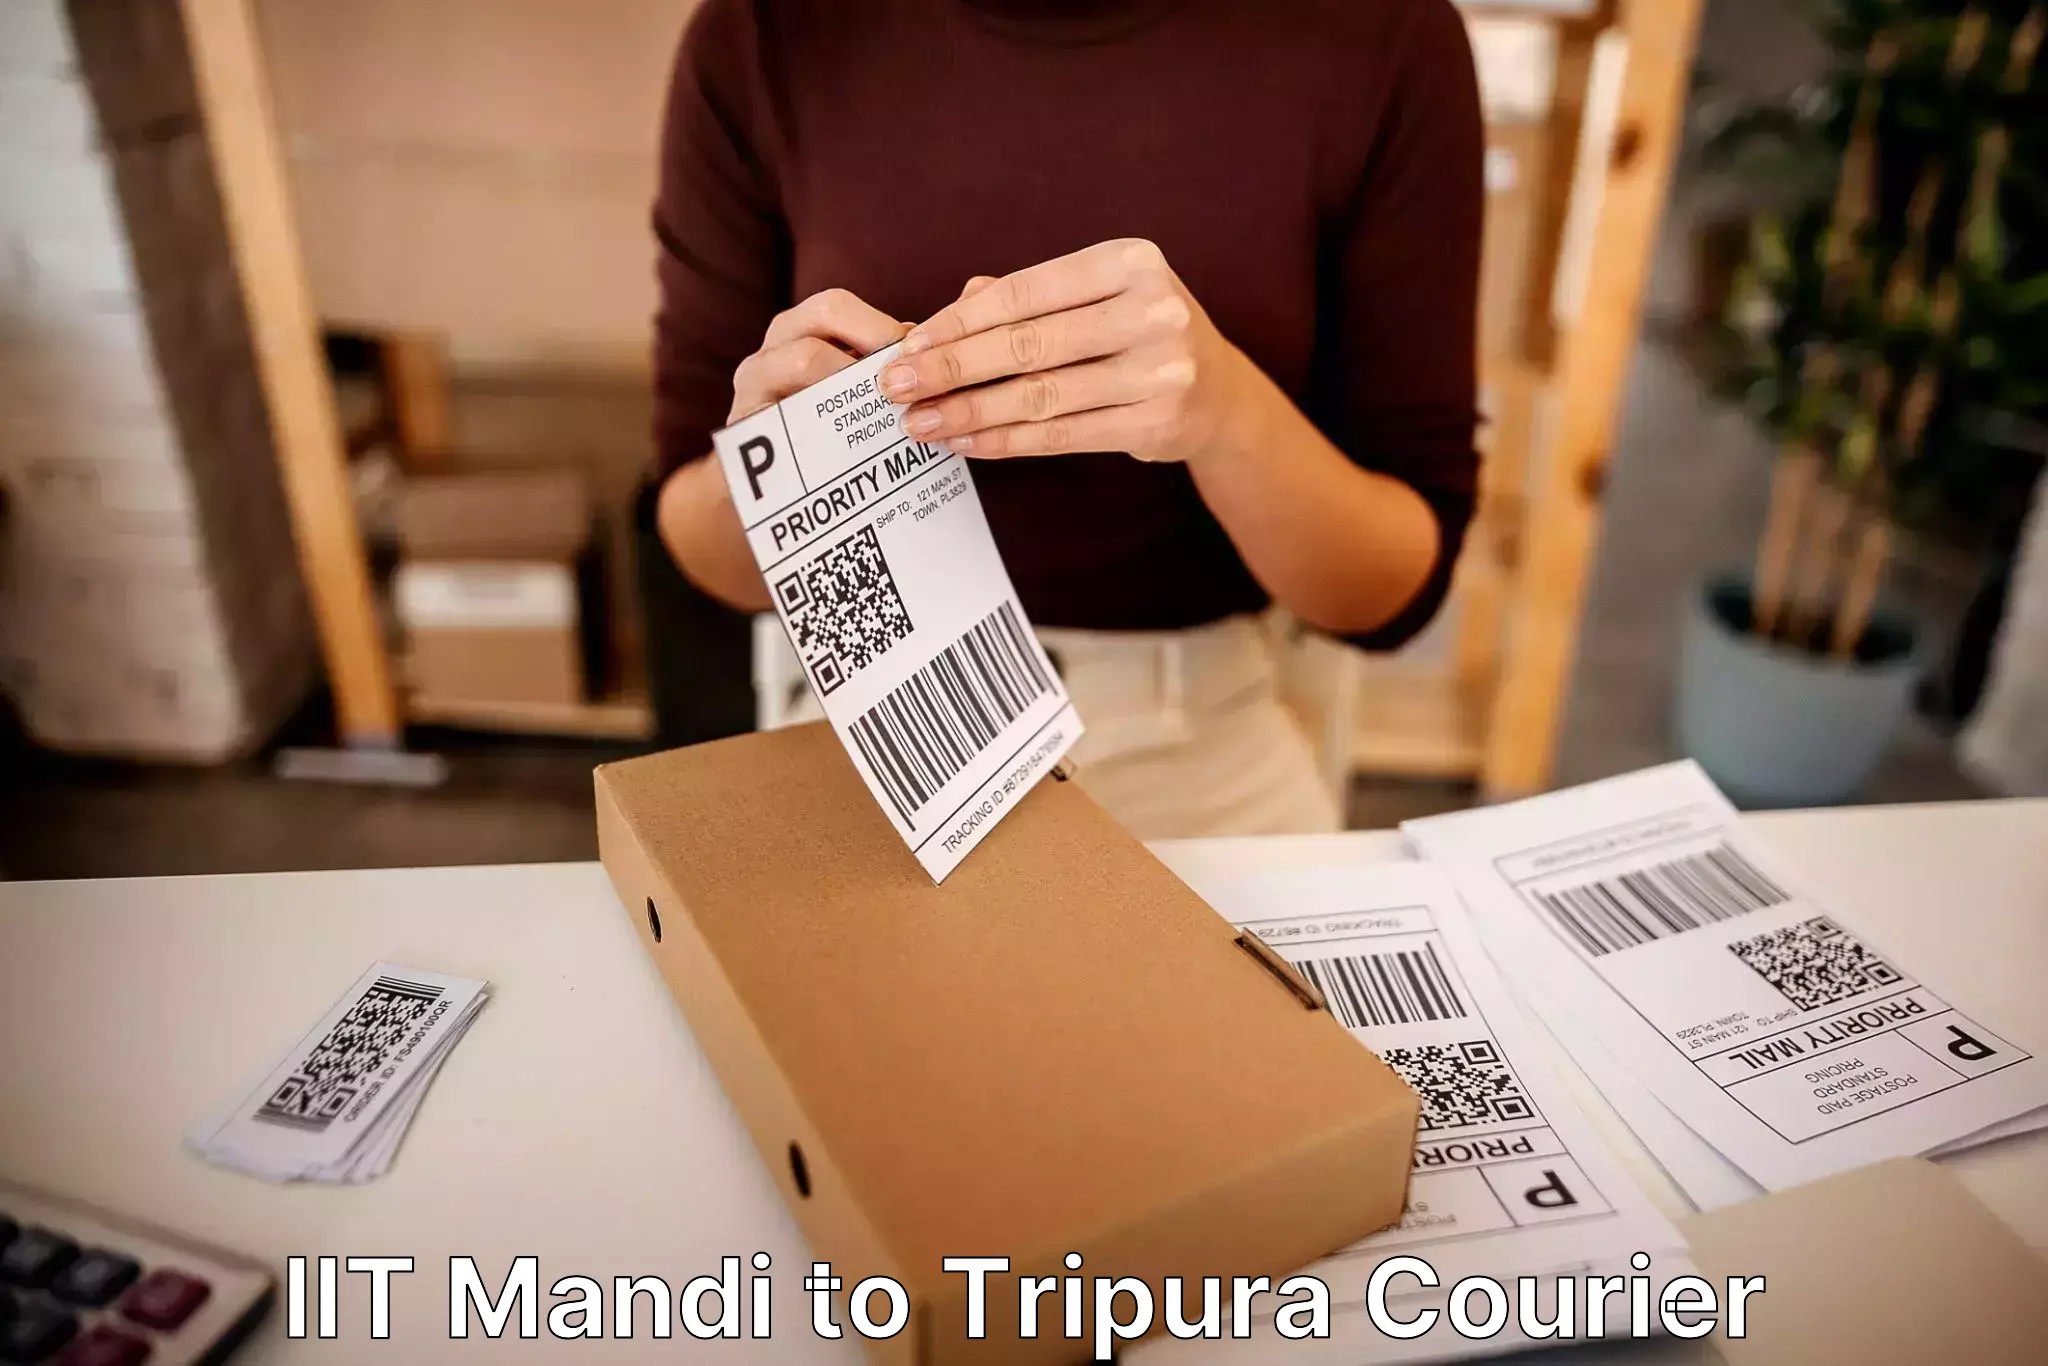 Personalized moving service IIT Mandi to Tripura